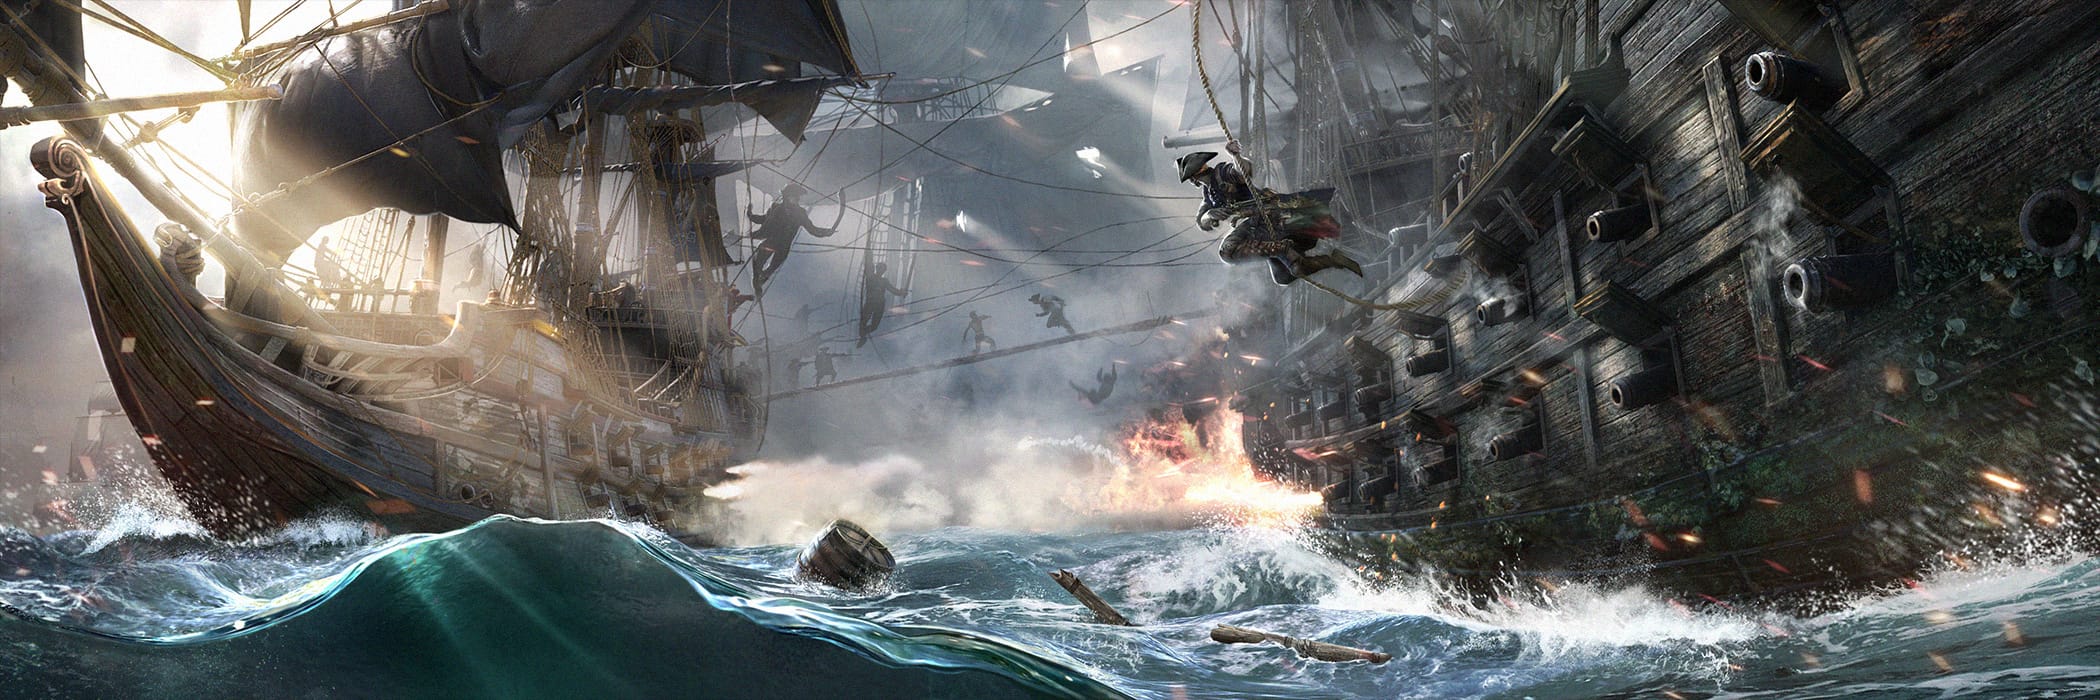 Pirates: Tides of Fortune - Plarium